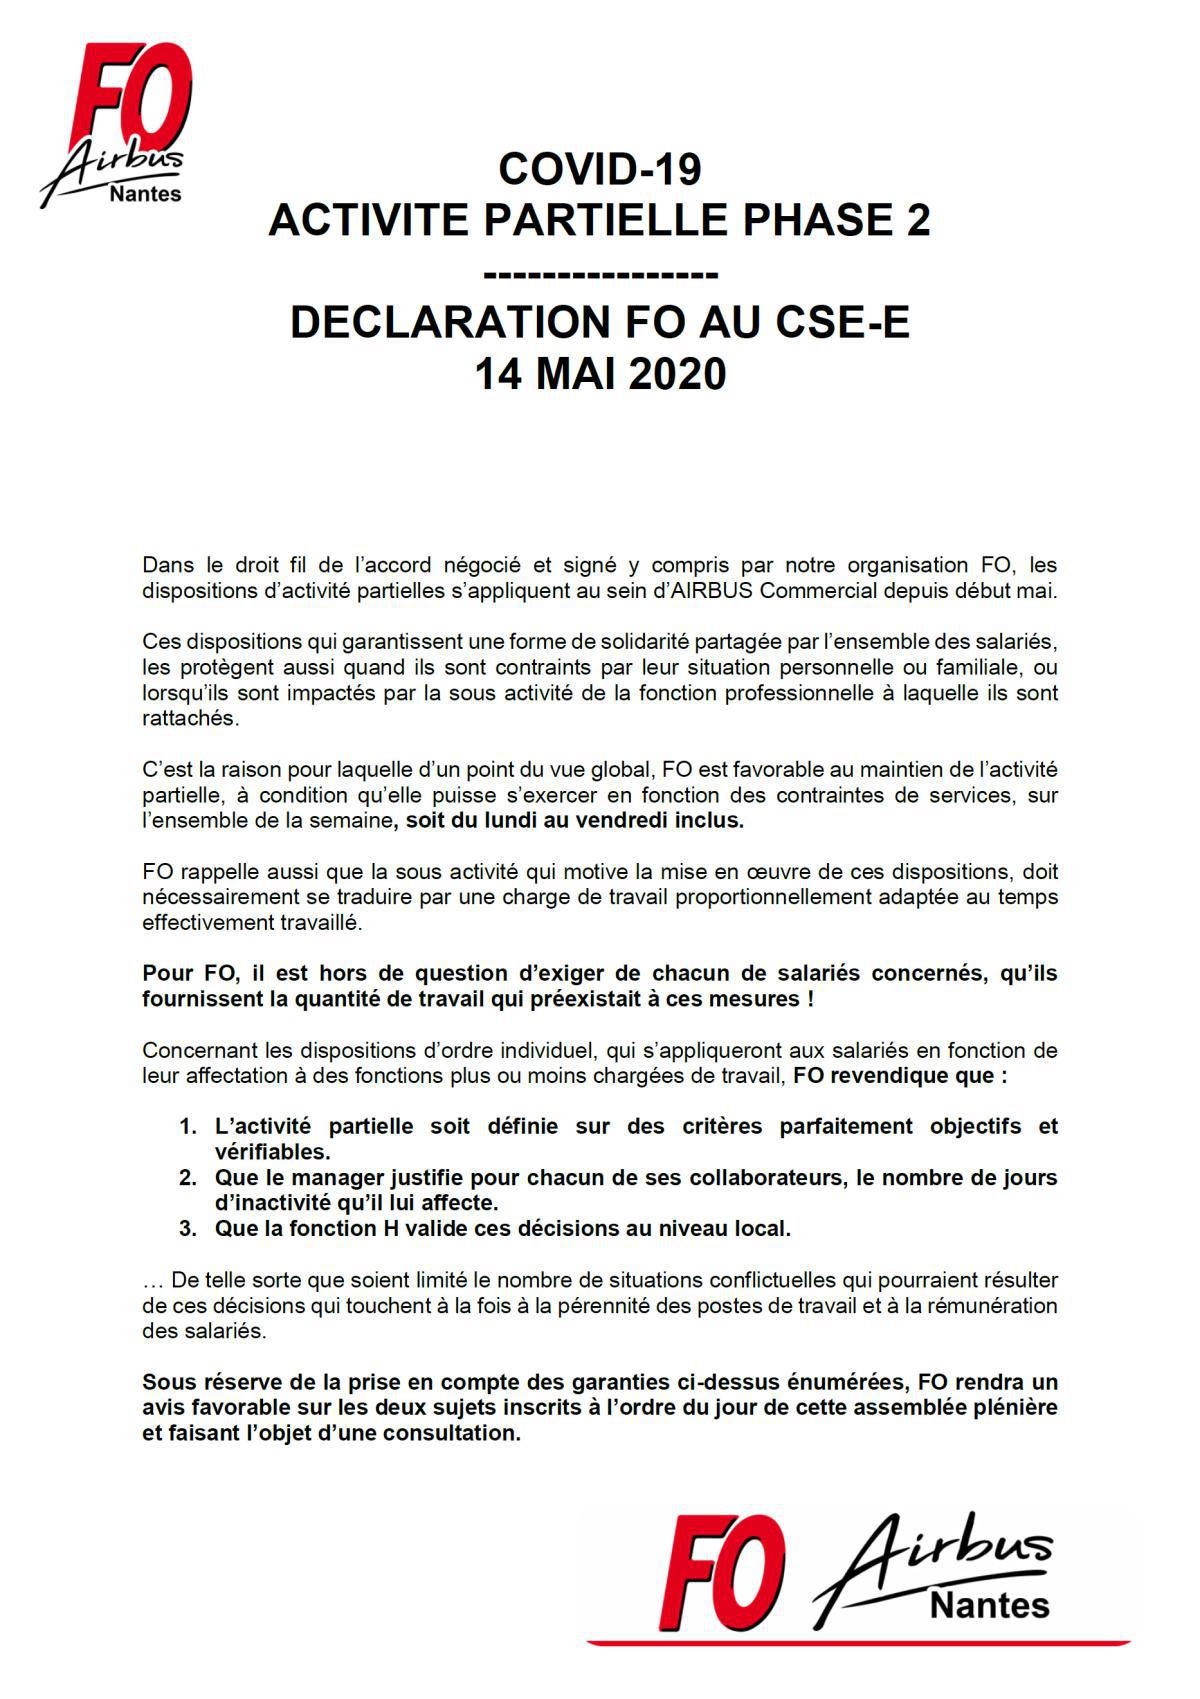 Déclaration FO lors du CSE-E du 14 mai 2020 pour la 2ème phase de l'activité partielle